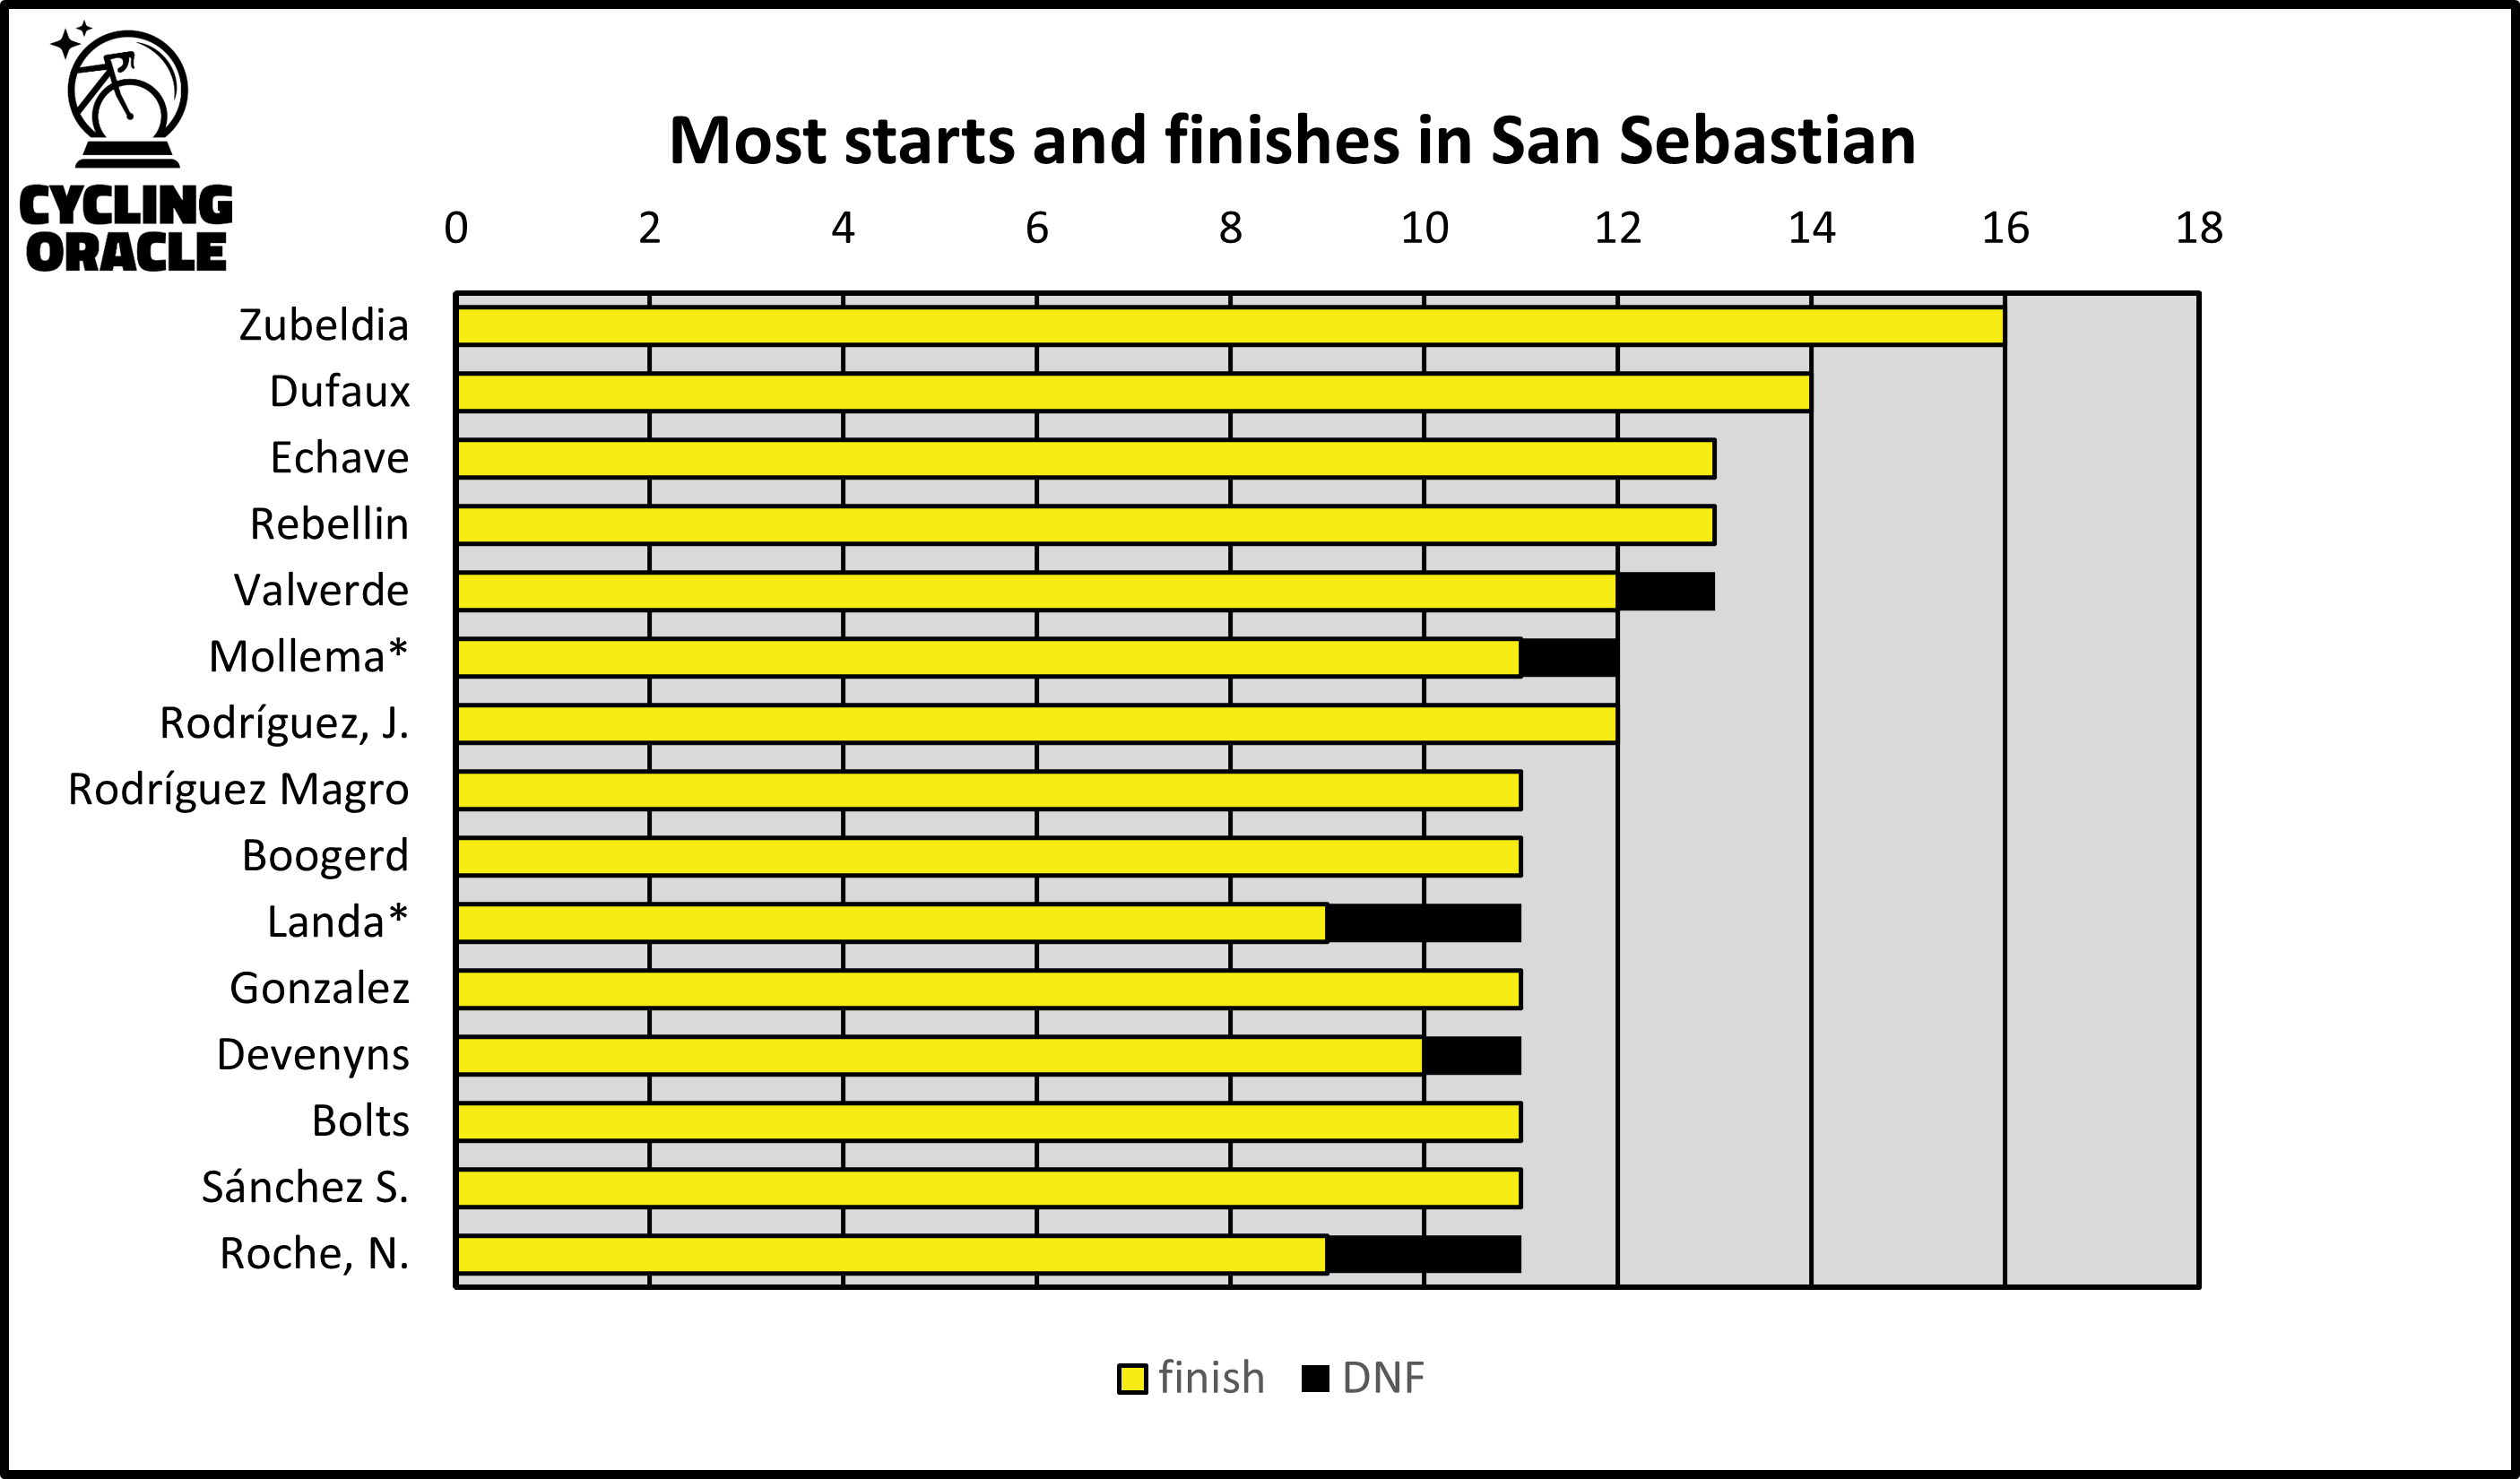 Meeste deelnames aan San Sebastian